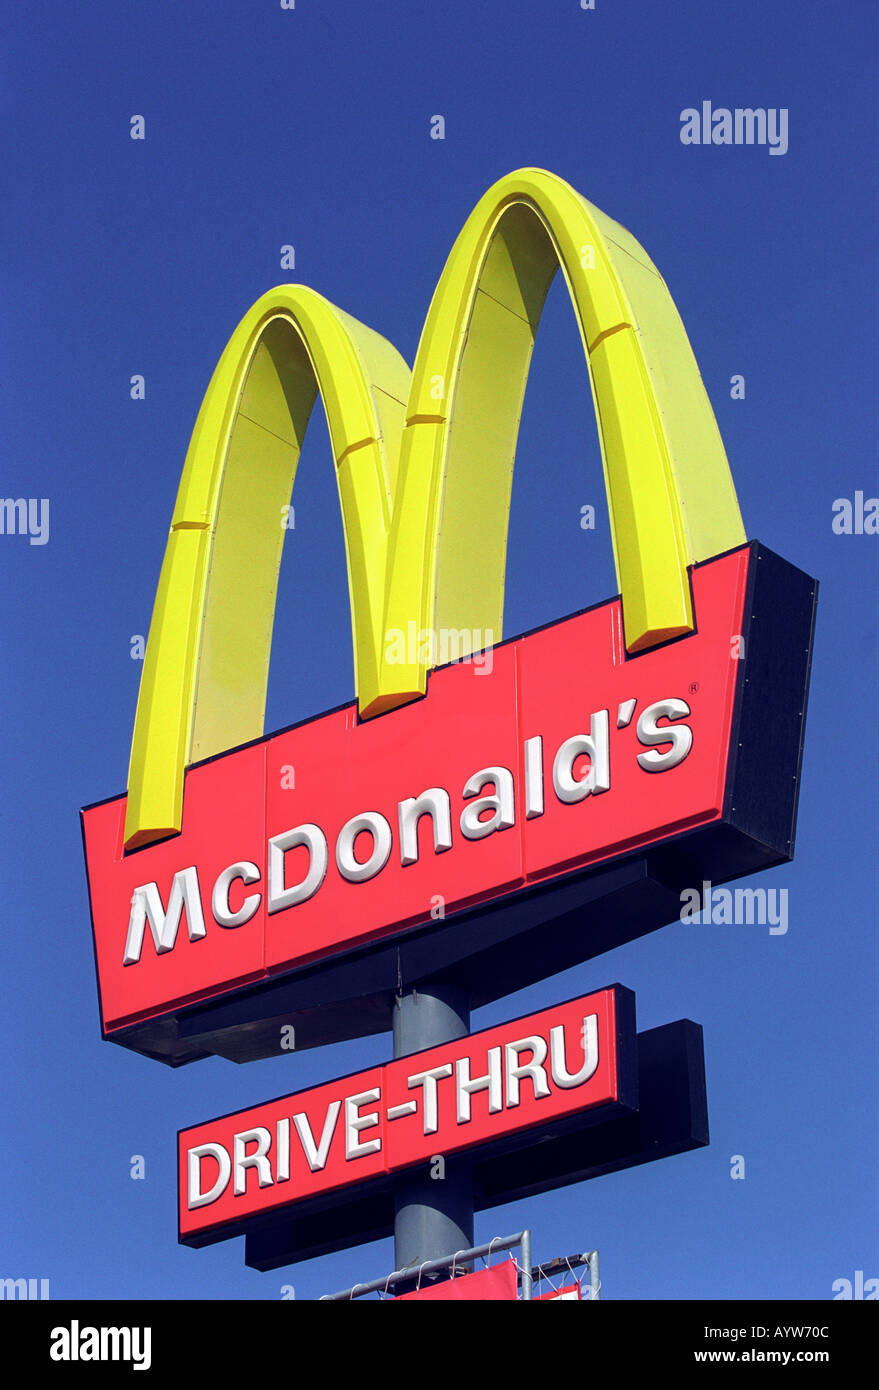 A close up of a McDonald's sign Stock Photo